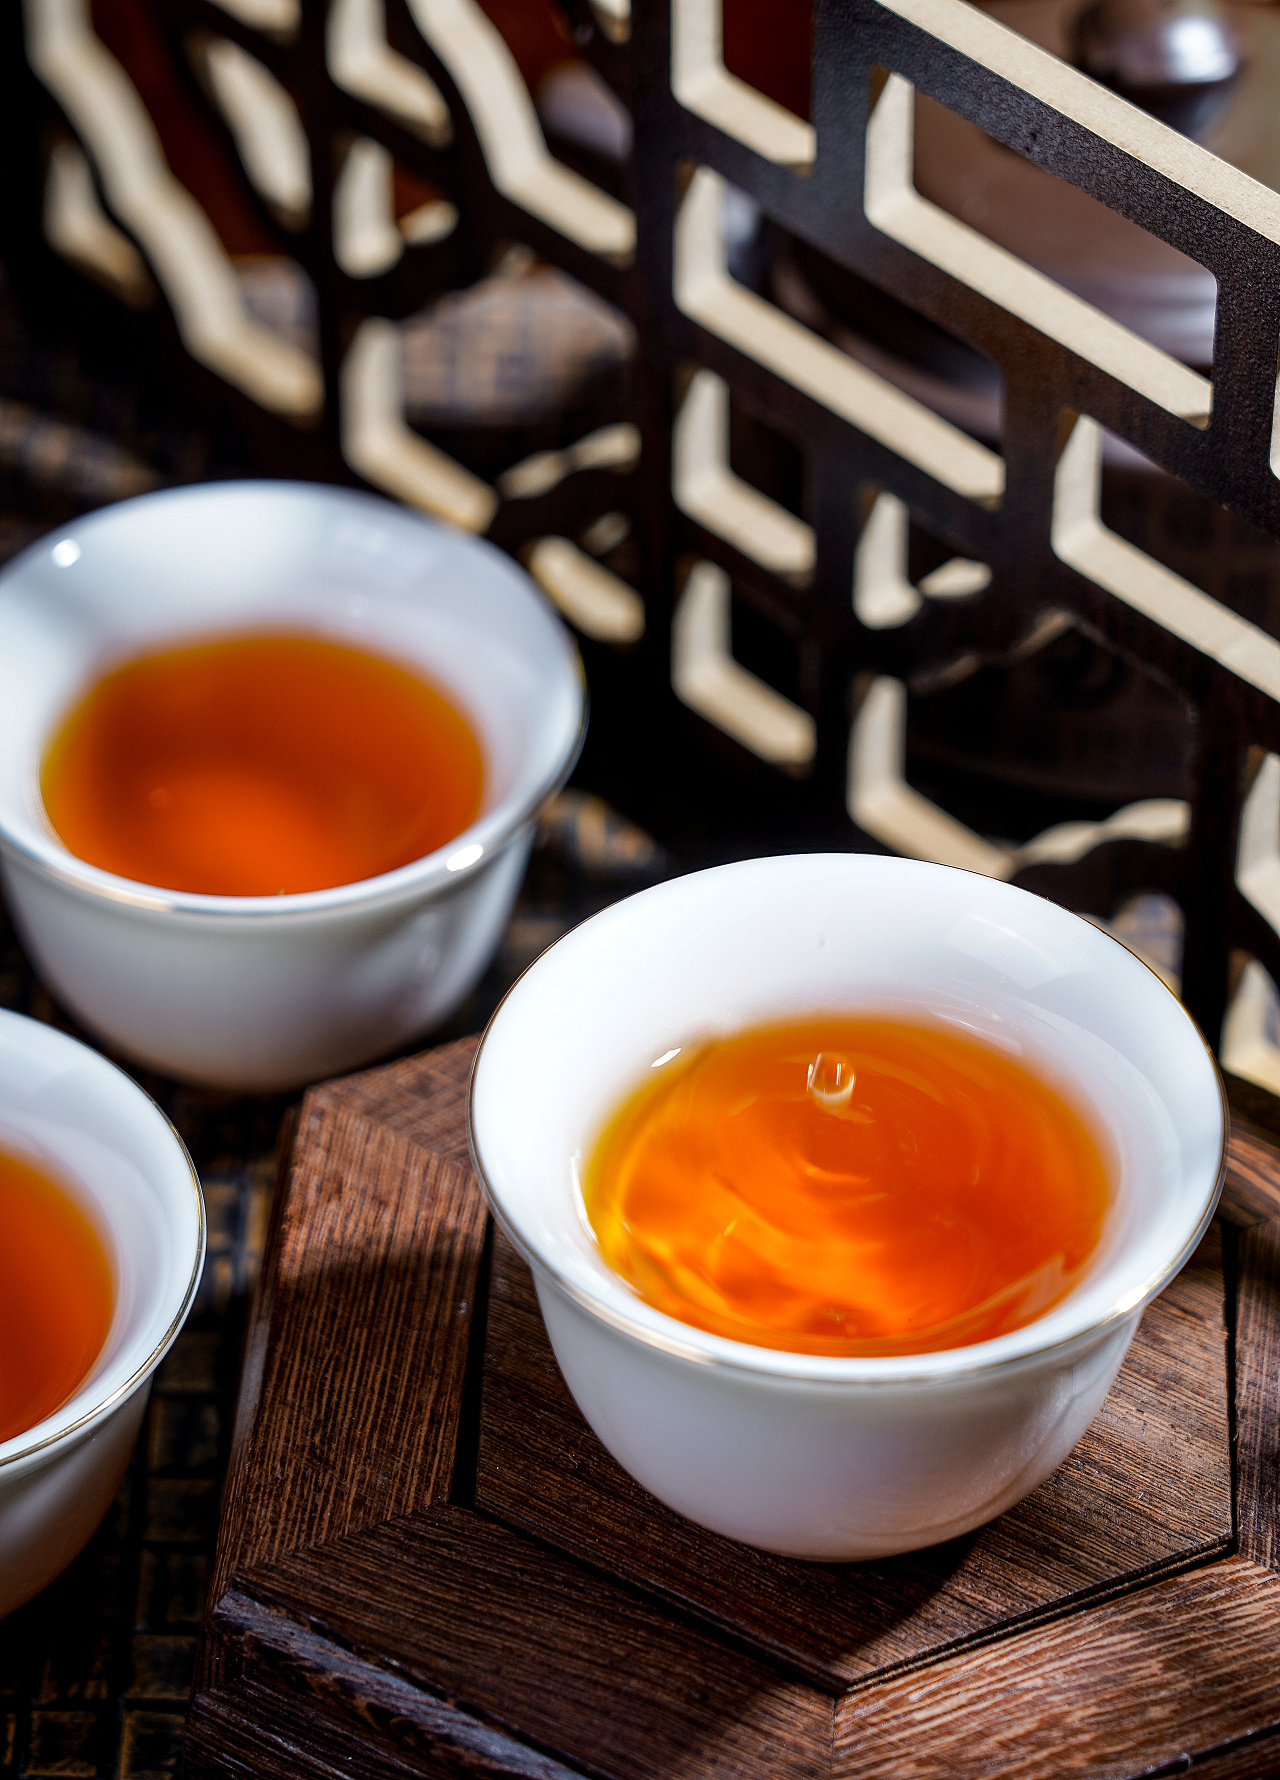 中国历史名茶之一大红袍 武夷传统五大珍贵名茶